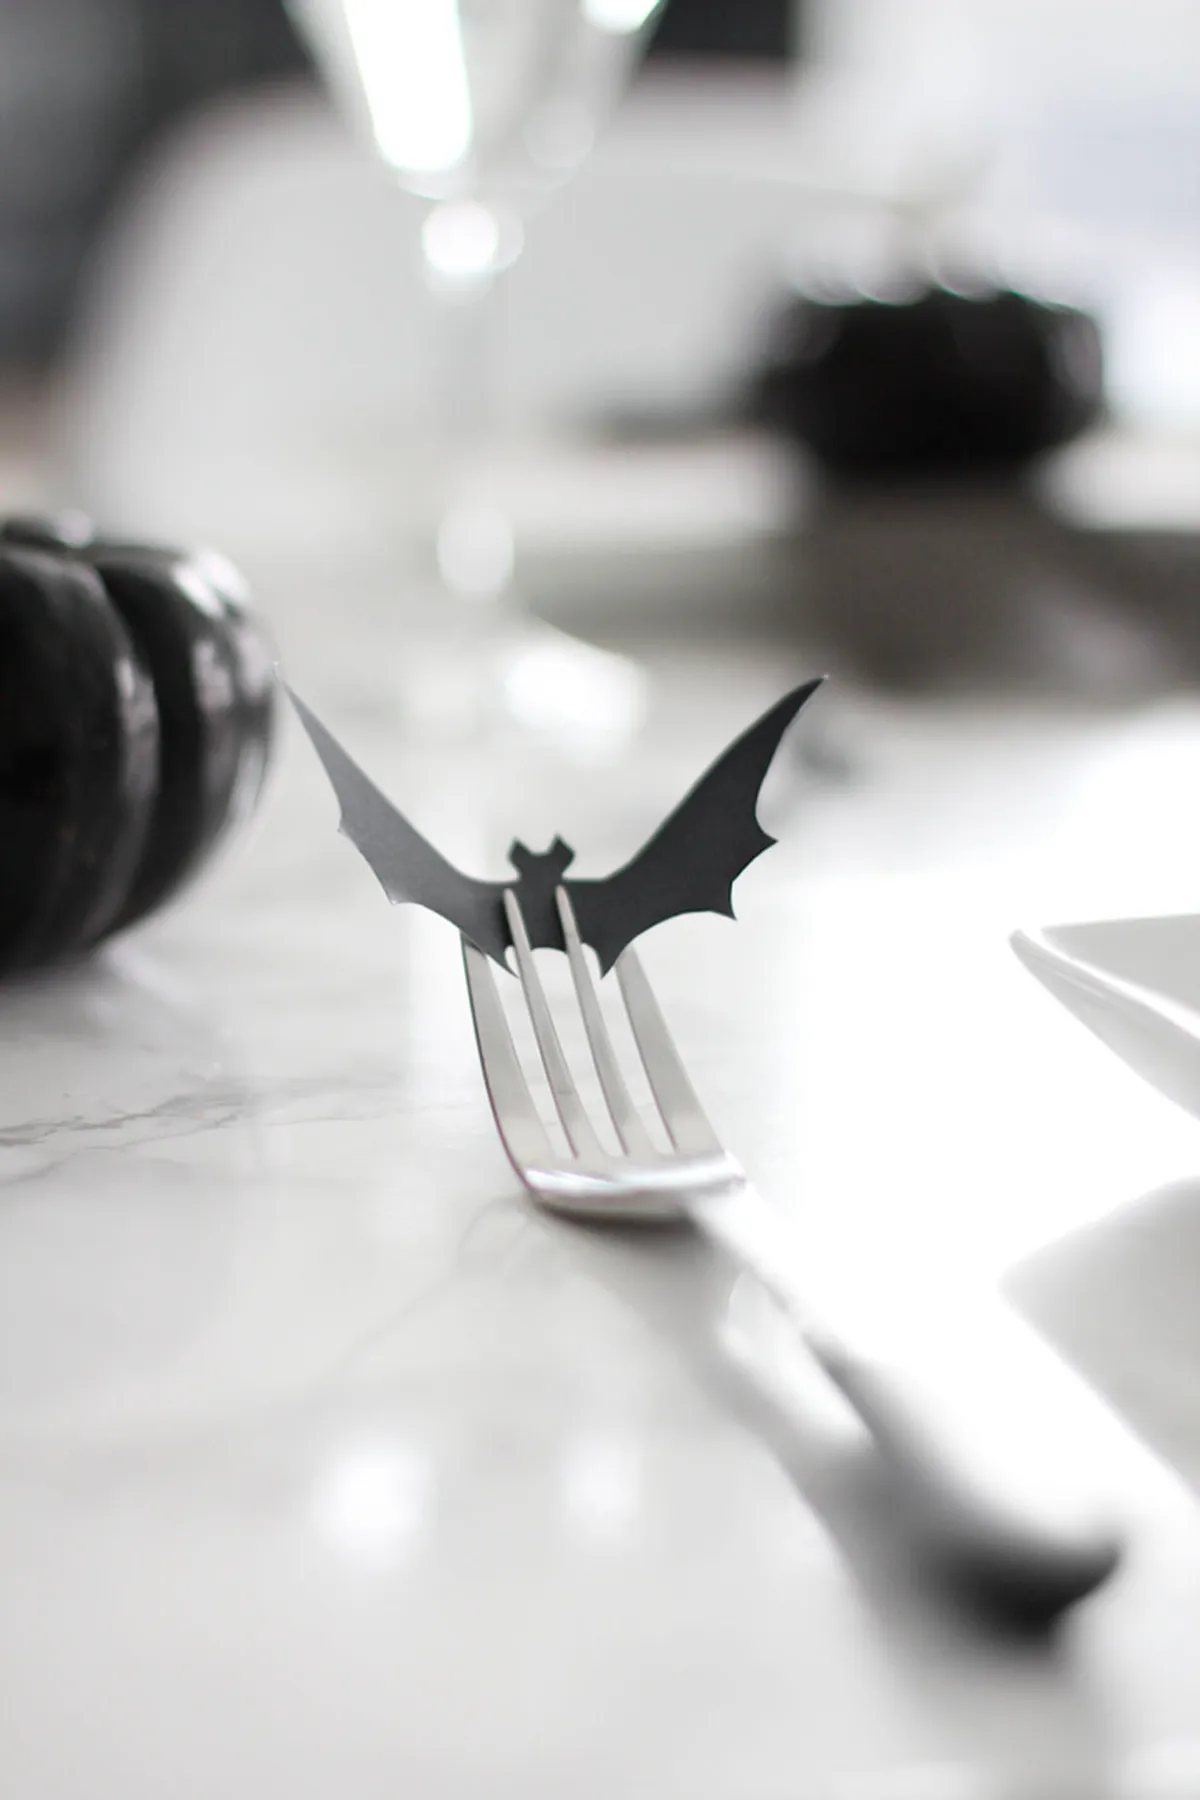 Bat forks